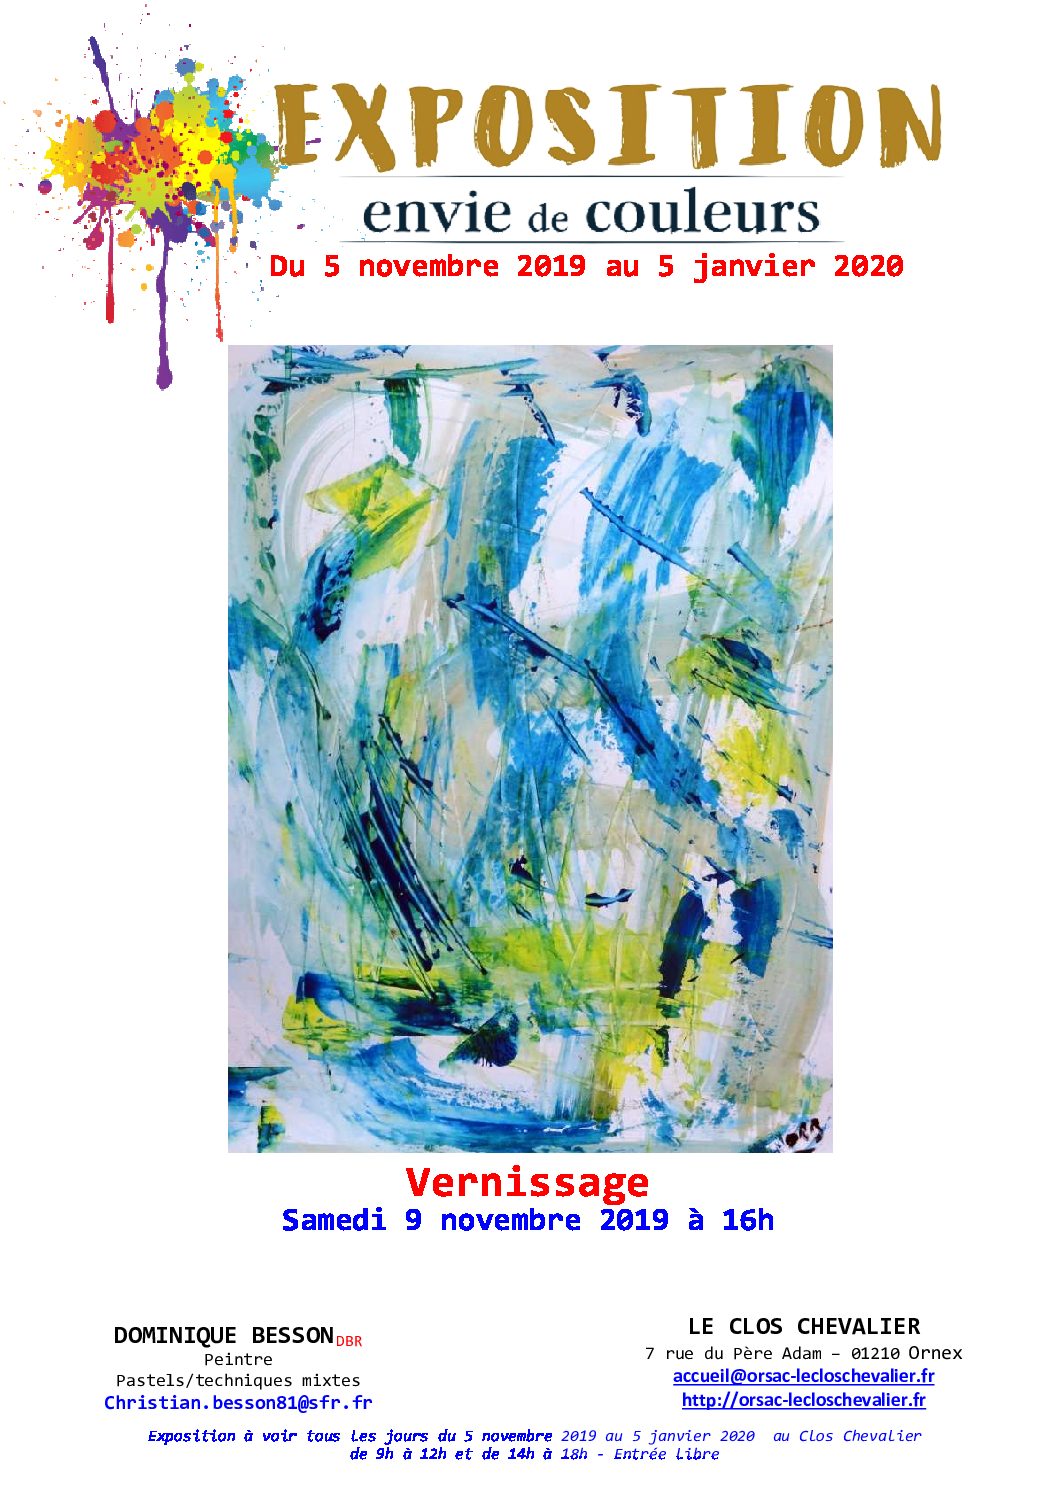 “ENVIE DE COULEURS” Exposition de Dominique BESSON du 5 novembre 2019 au 5 janvier 2020